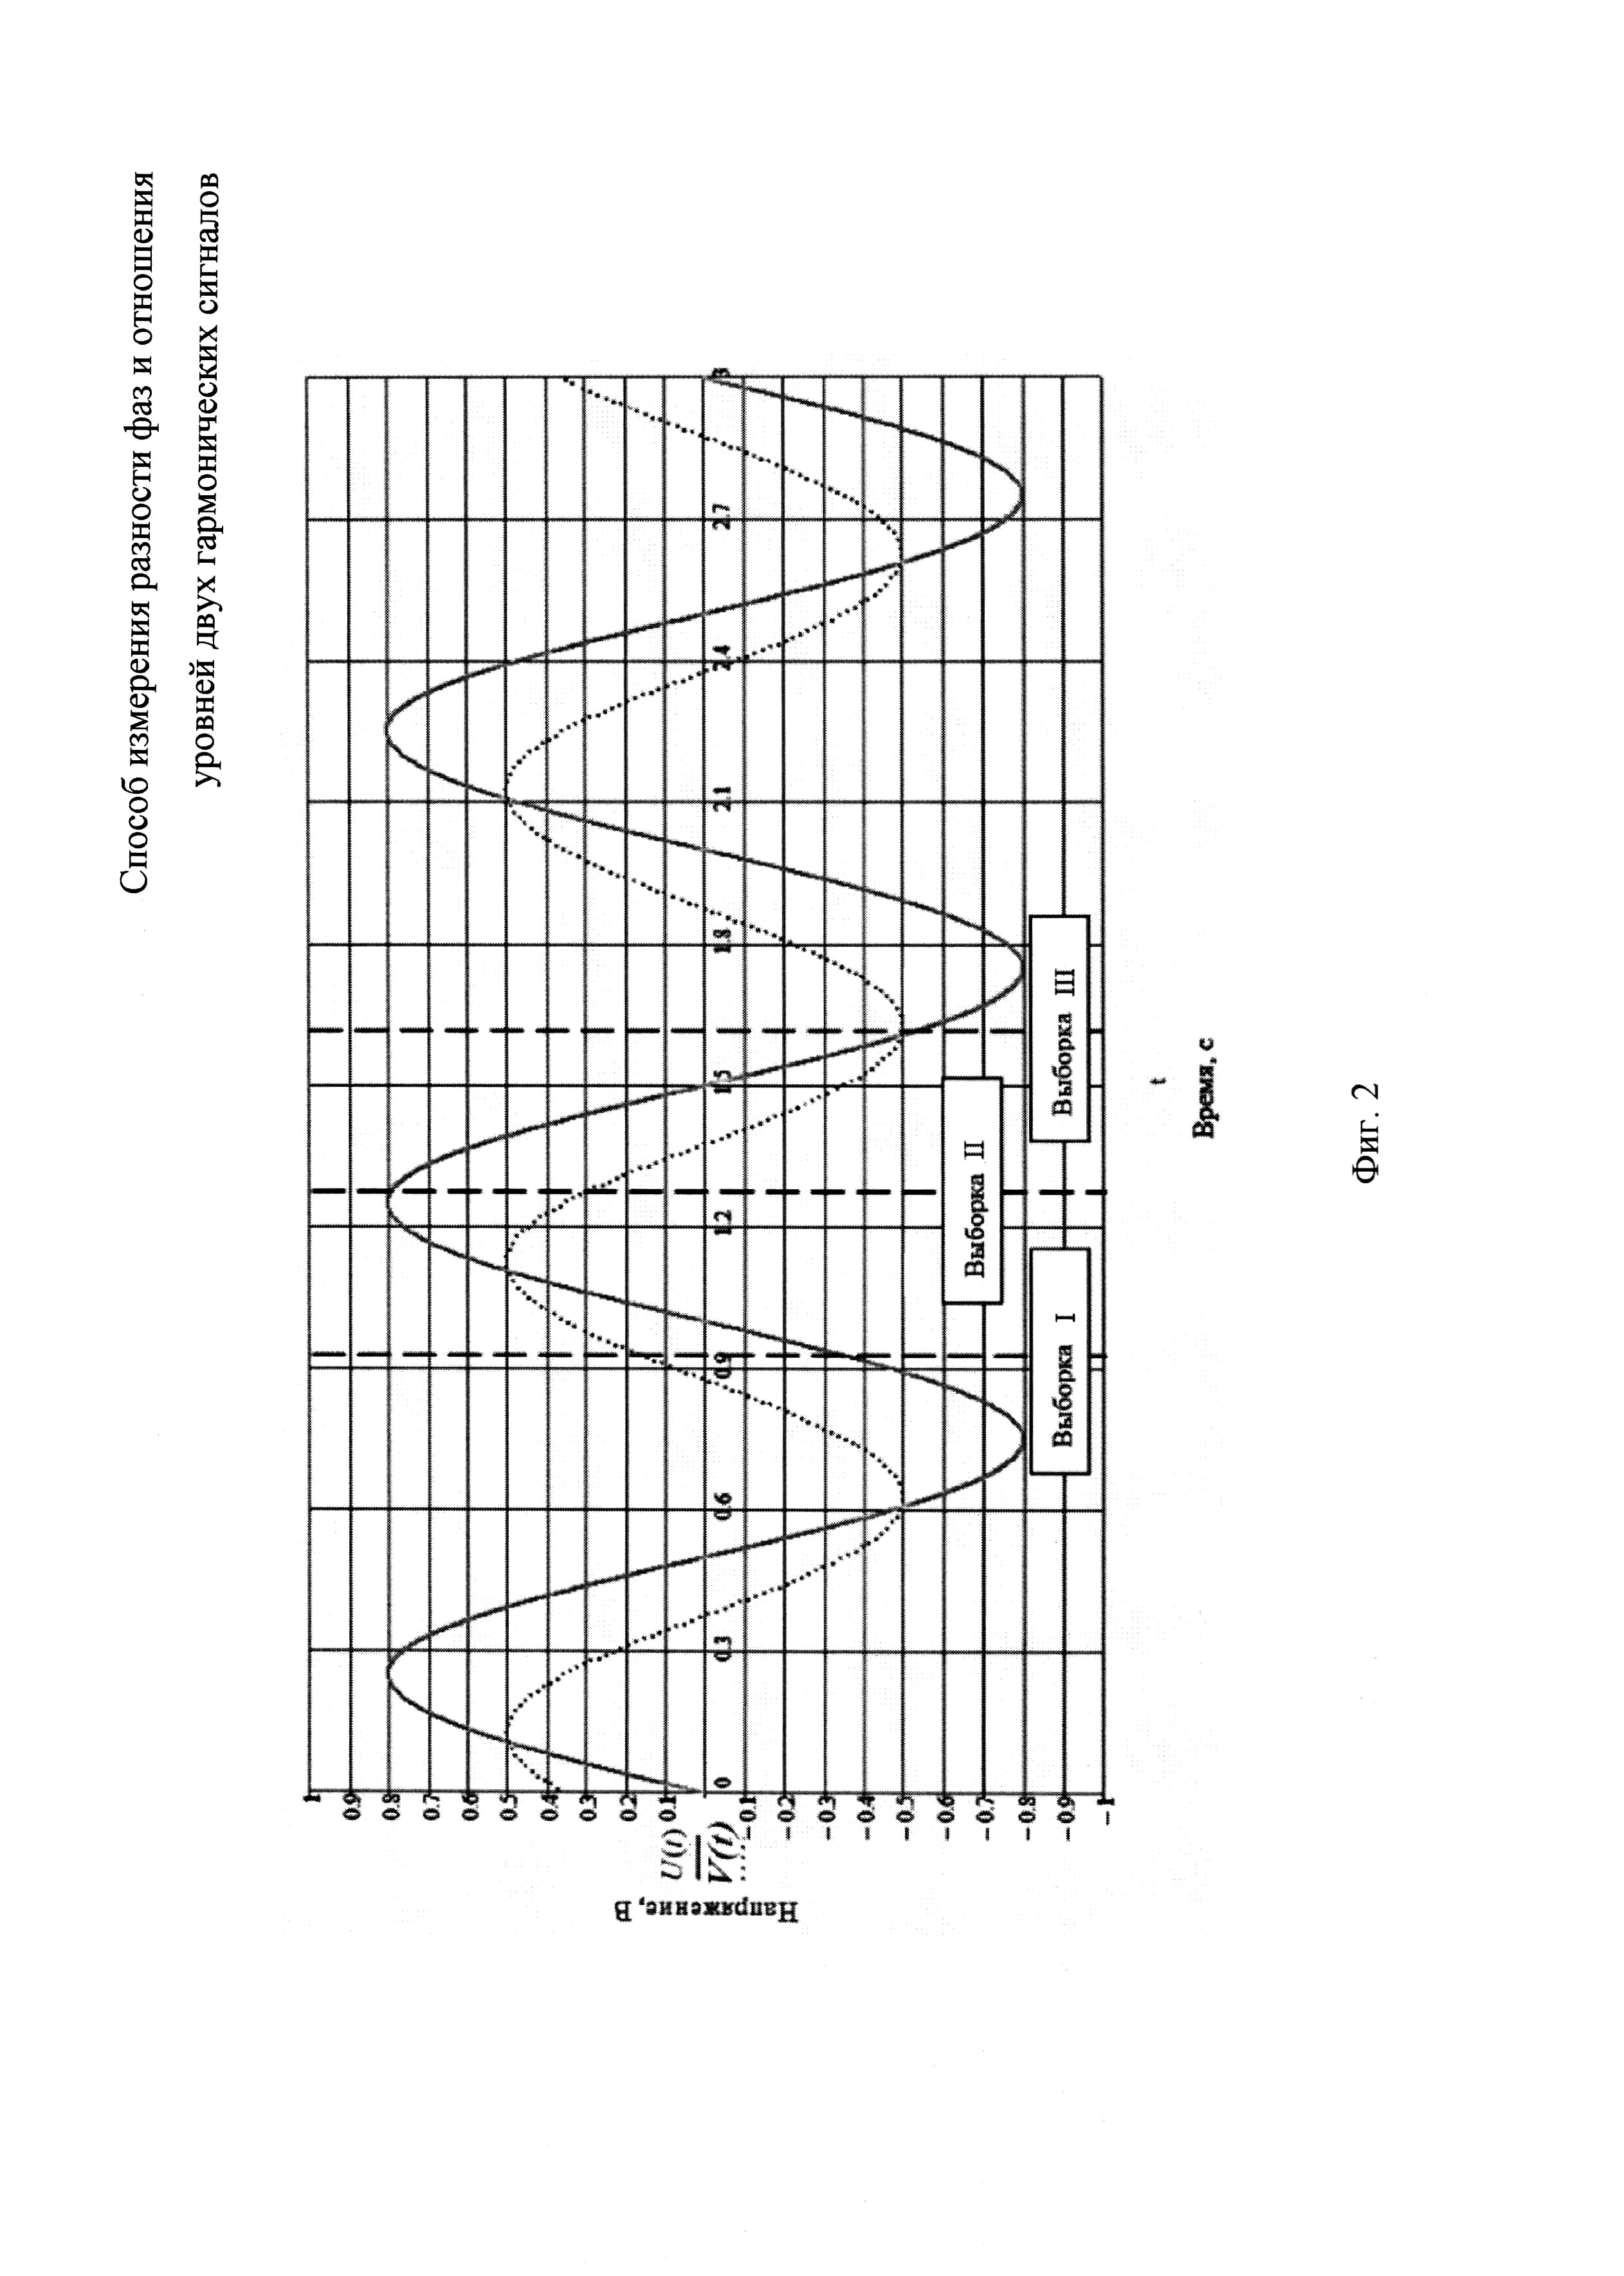 Способ измерения разности фаз и отношения уровней двух гармонических сигналов